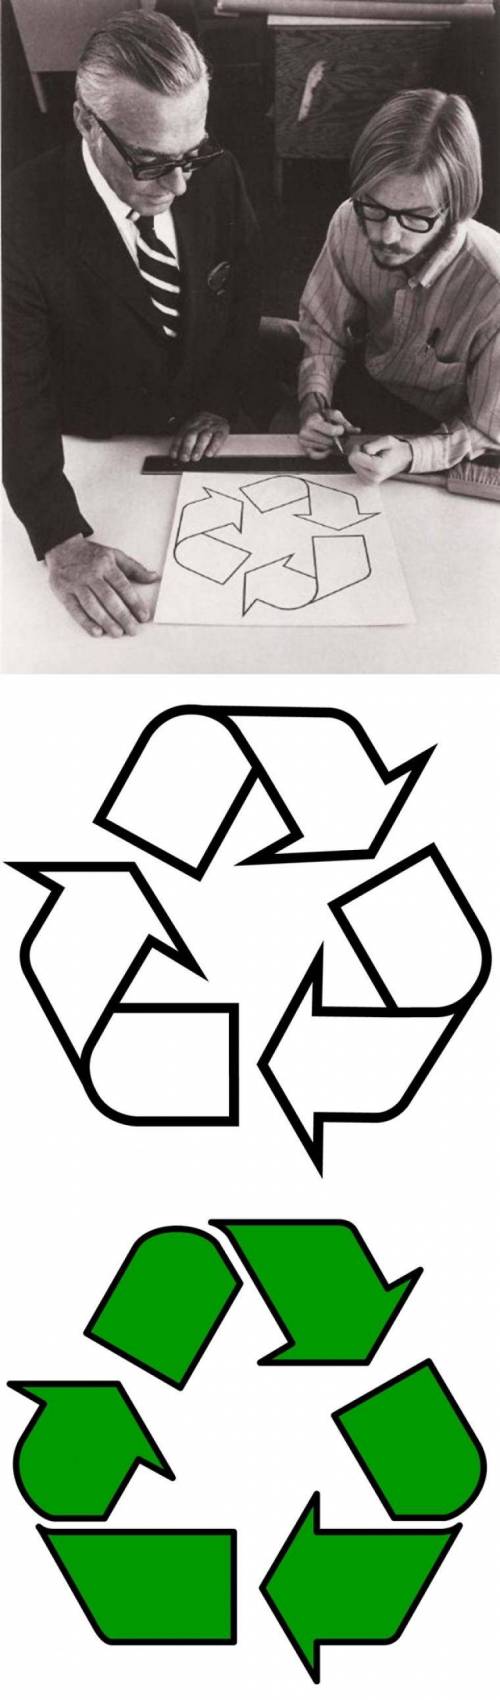 1970년 세계적으로 유명한 상징을 완성한 개리 앤더슨